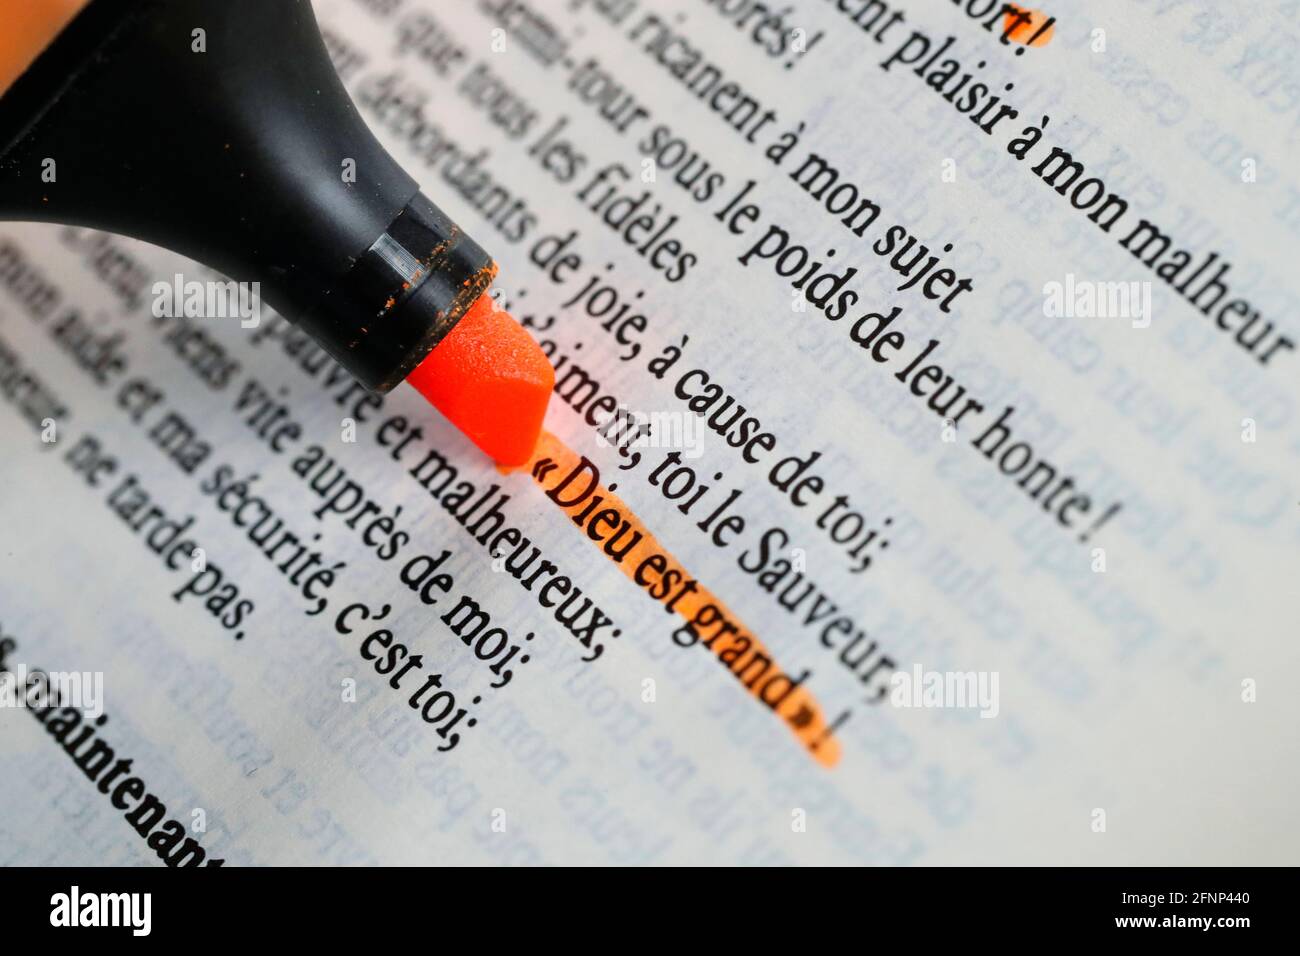 Femme étudiant la bible. Gros plan à portée de main et surligneur. France  Photo Stock - Alamy